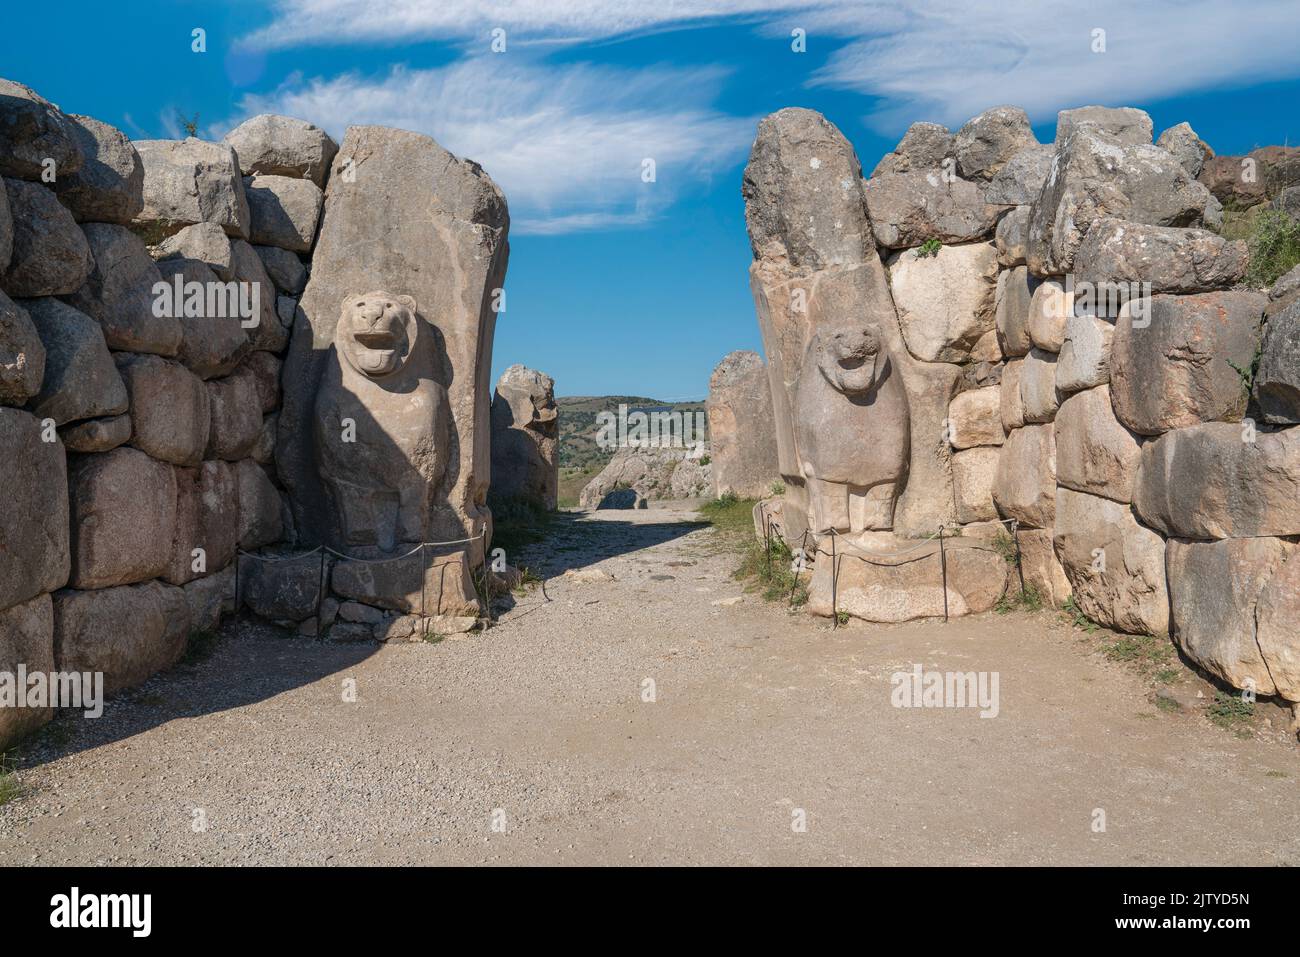 La porta del Leone a sud-ovest di Hattusa è un'antica città situata nei pressi della moderna Bogazkale, nella provincia di Corum, nella regione turca del Mar Nero. Foto Stock